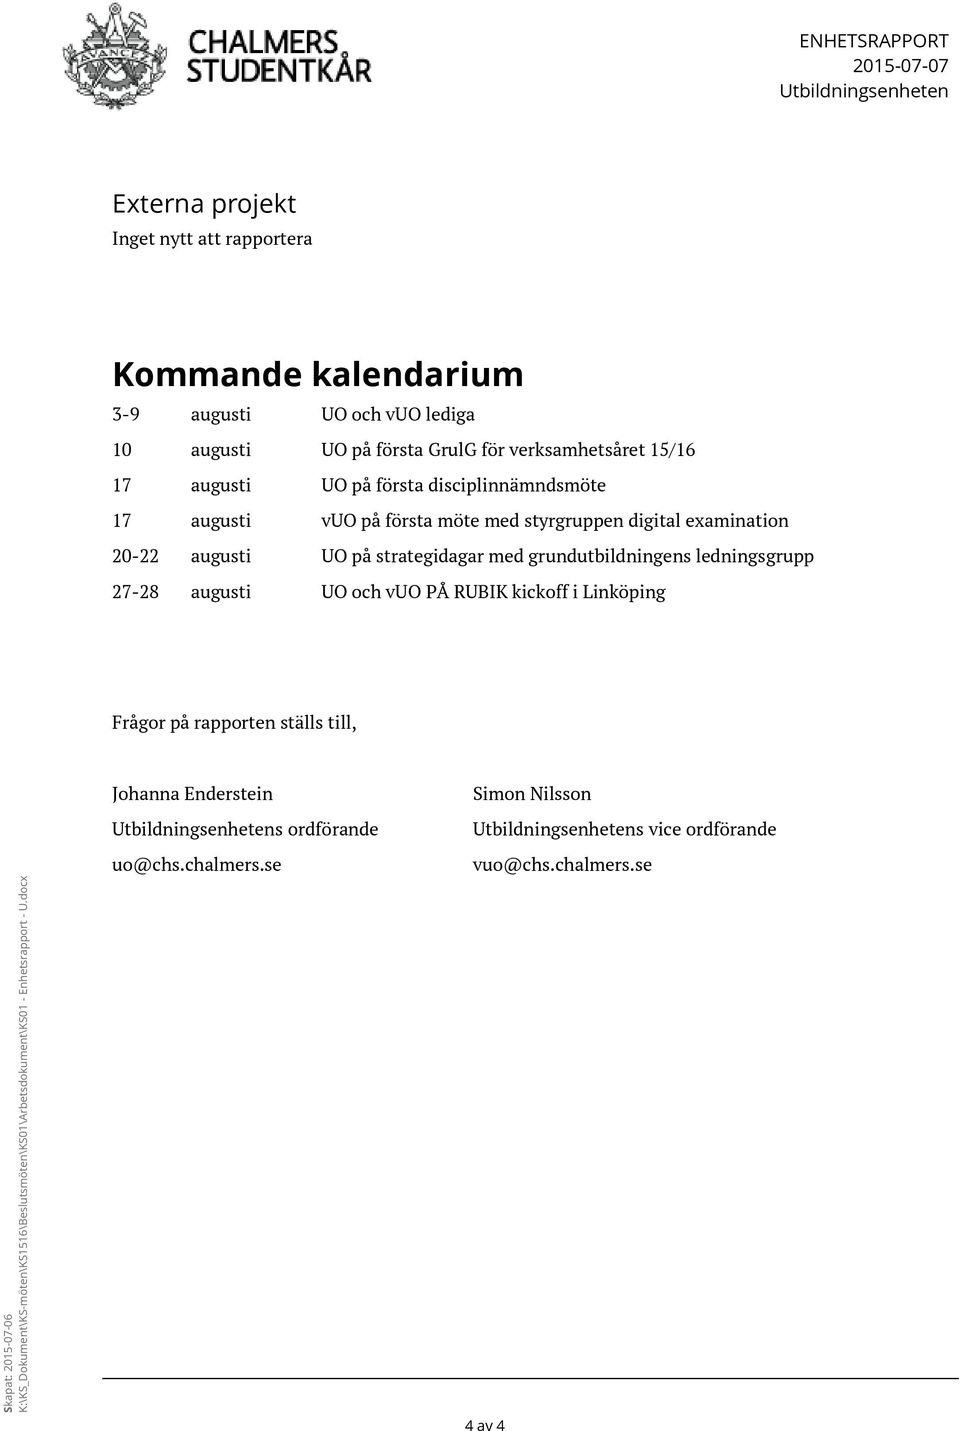 grundutbildningens ledningsgrupp 27-28 augusti UO och vuo PÅ RUBIK kickoff i Linköping Frågor på rapporten ställs till, Skapat: 2015-07-06